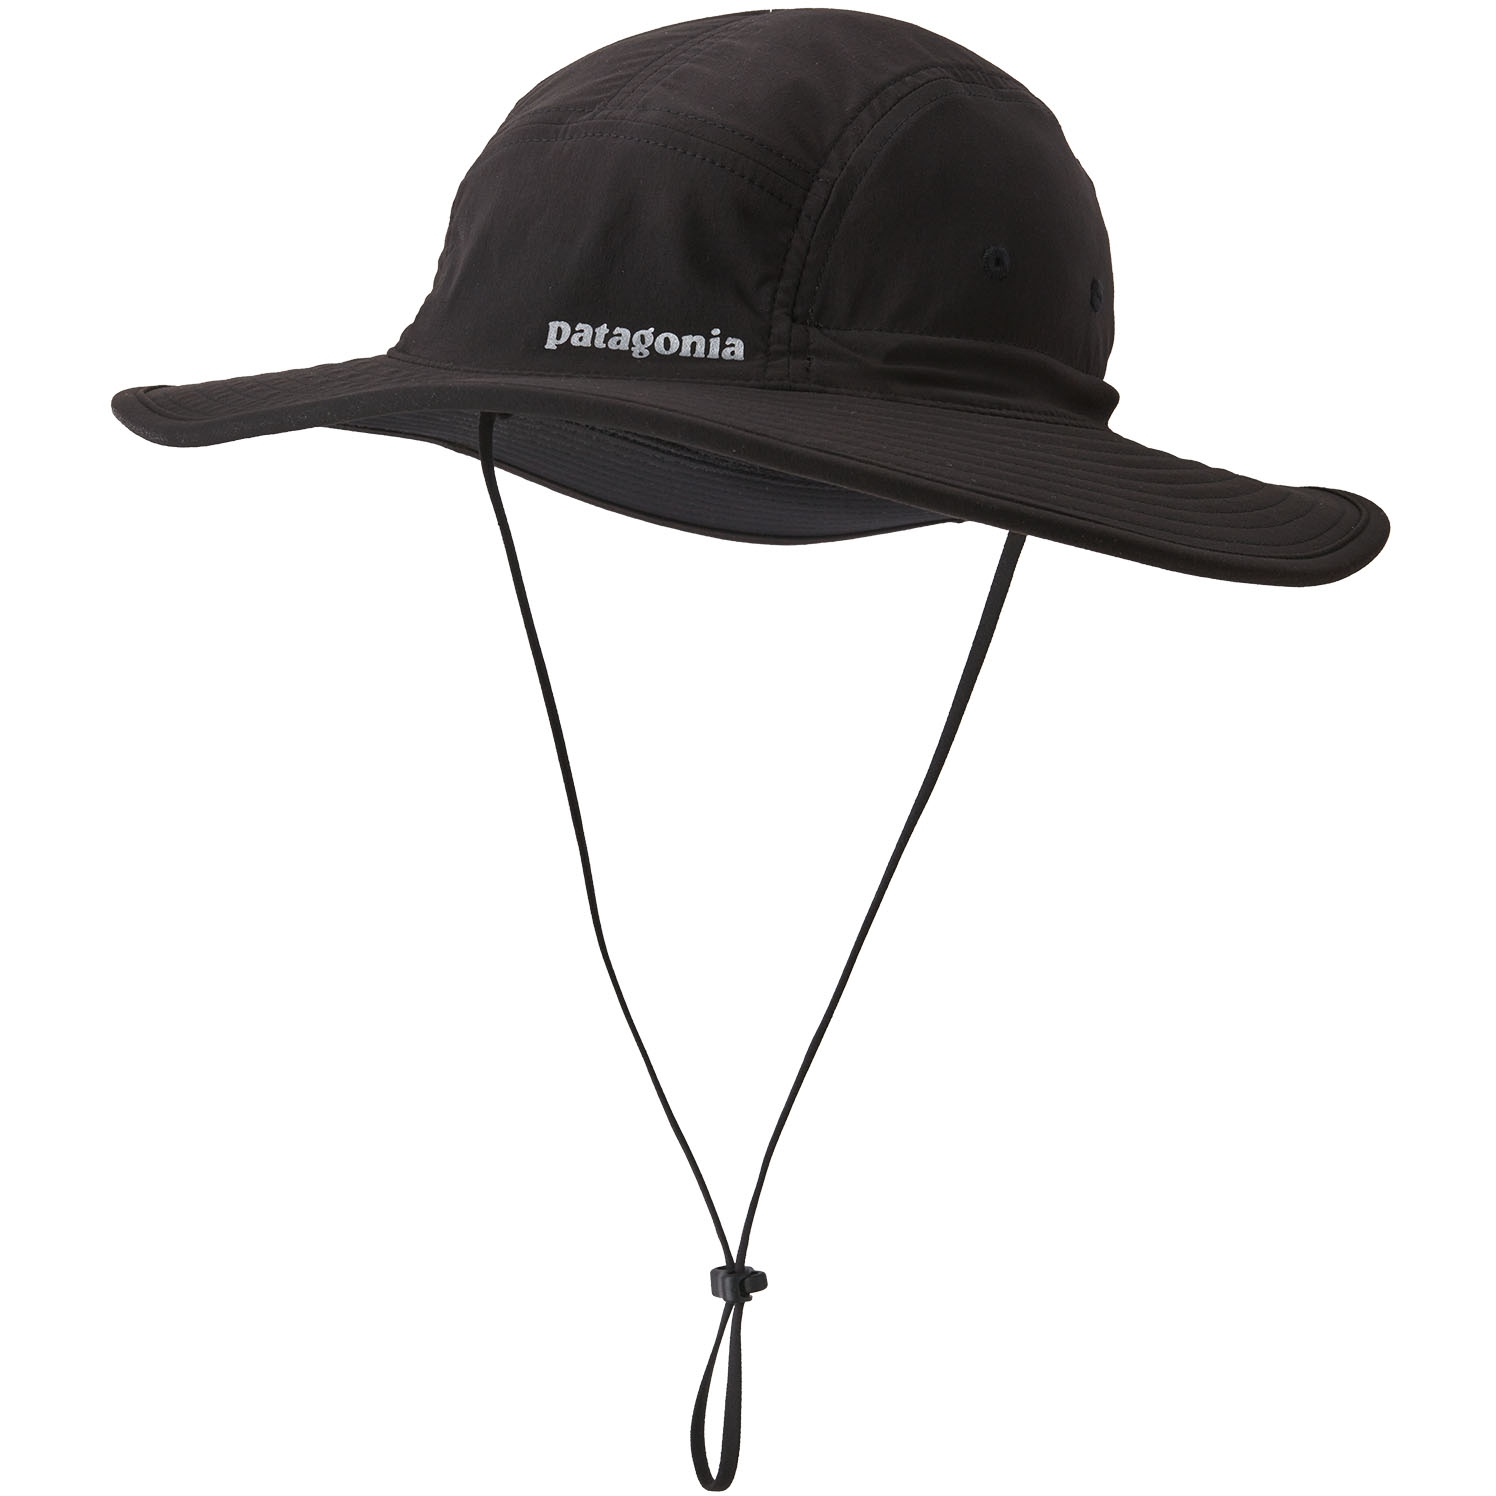 Produktbild von Patagonia Quandary Hut mit Krempe - schwarz